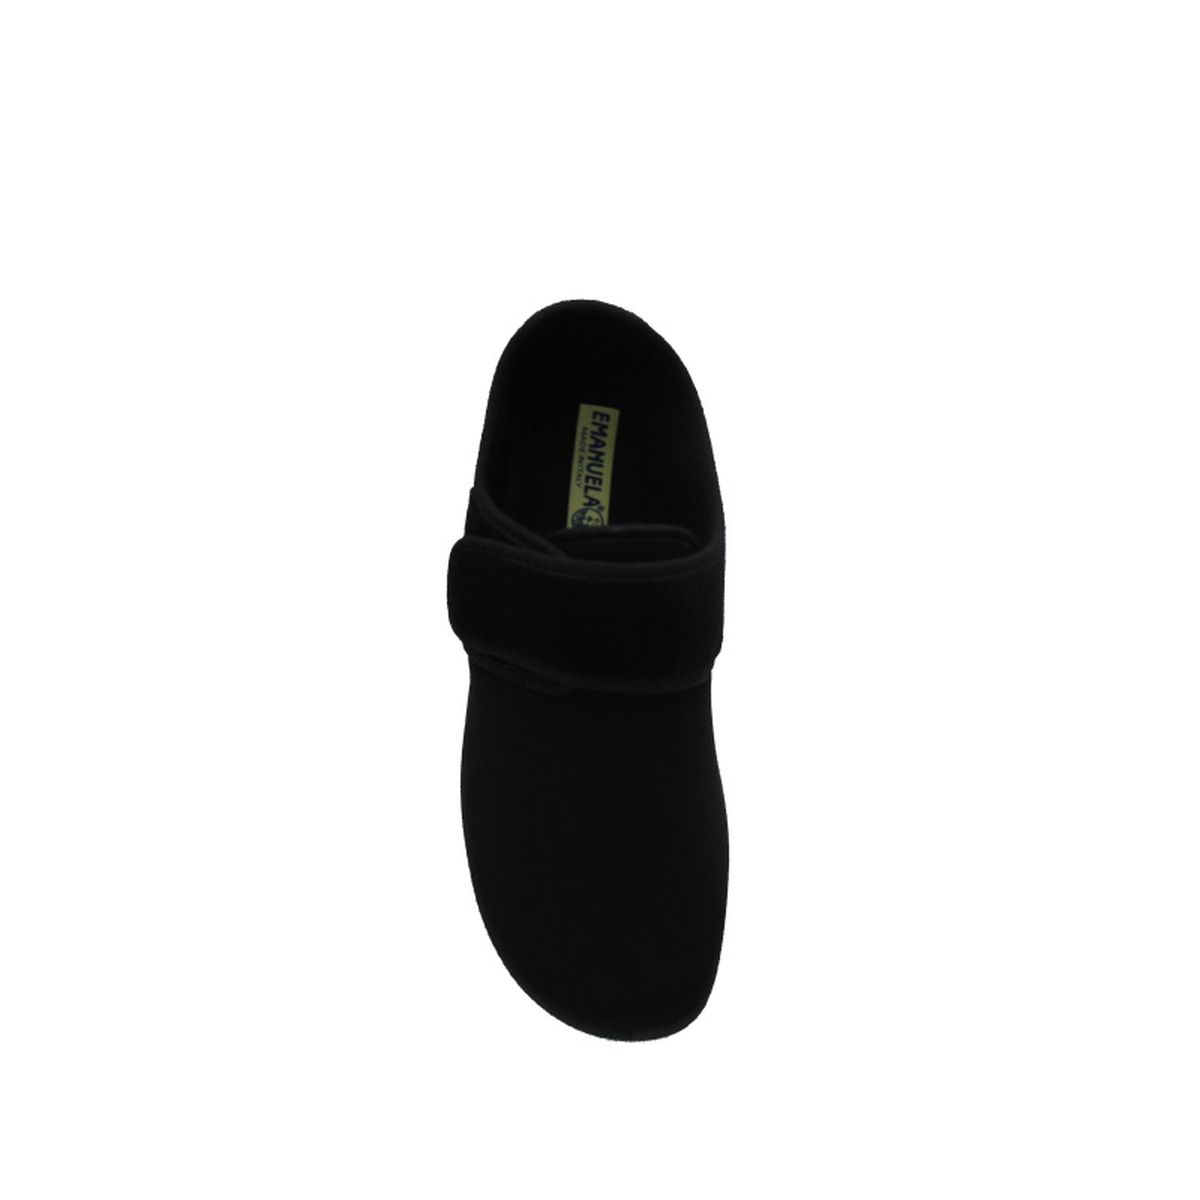 Pantofola Uomo elasticizzata con strappo Emanuela 985 nero (versione invernale)